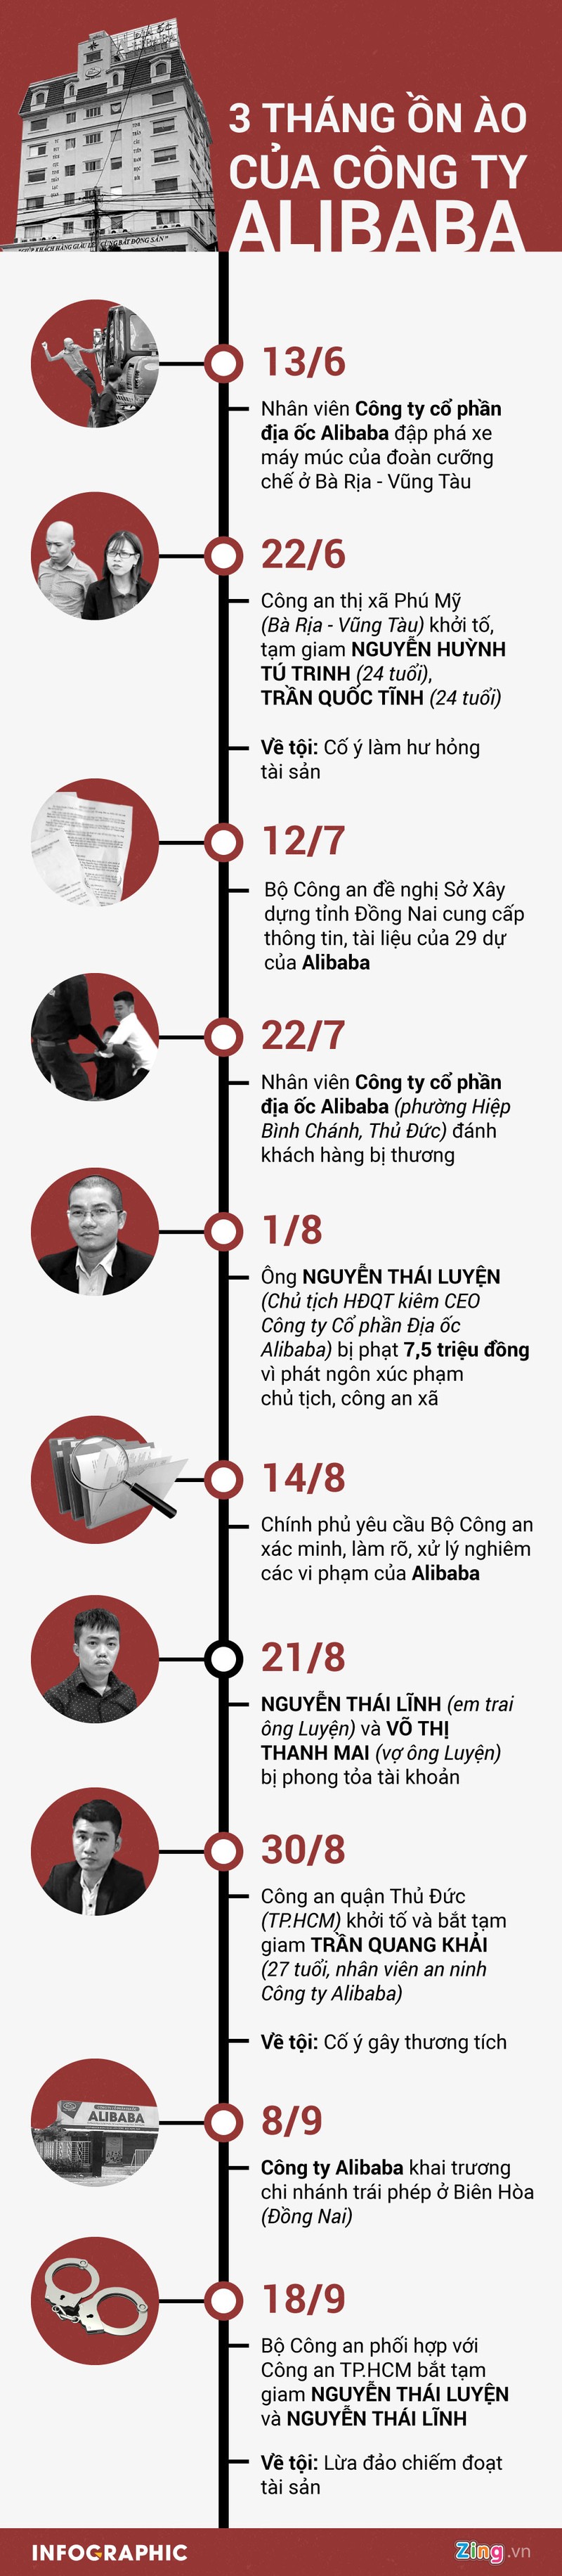 Alibaba chuyen tru so chinh, thu thap thong tin de tra tien khach hang?-Hinh-4